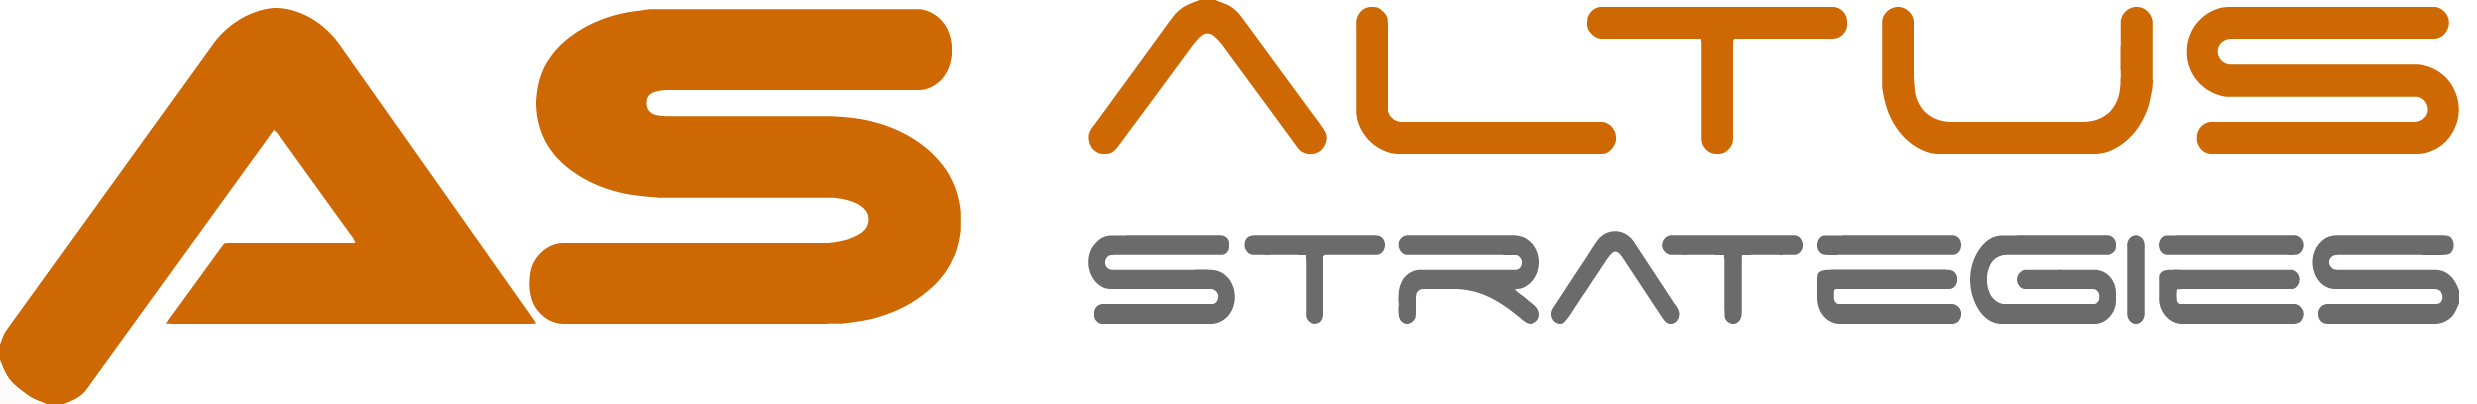 Altus Strategies Plc, Thursday, August 20, 2020, Press release picture